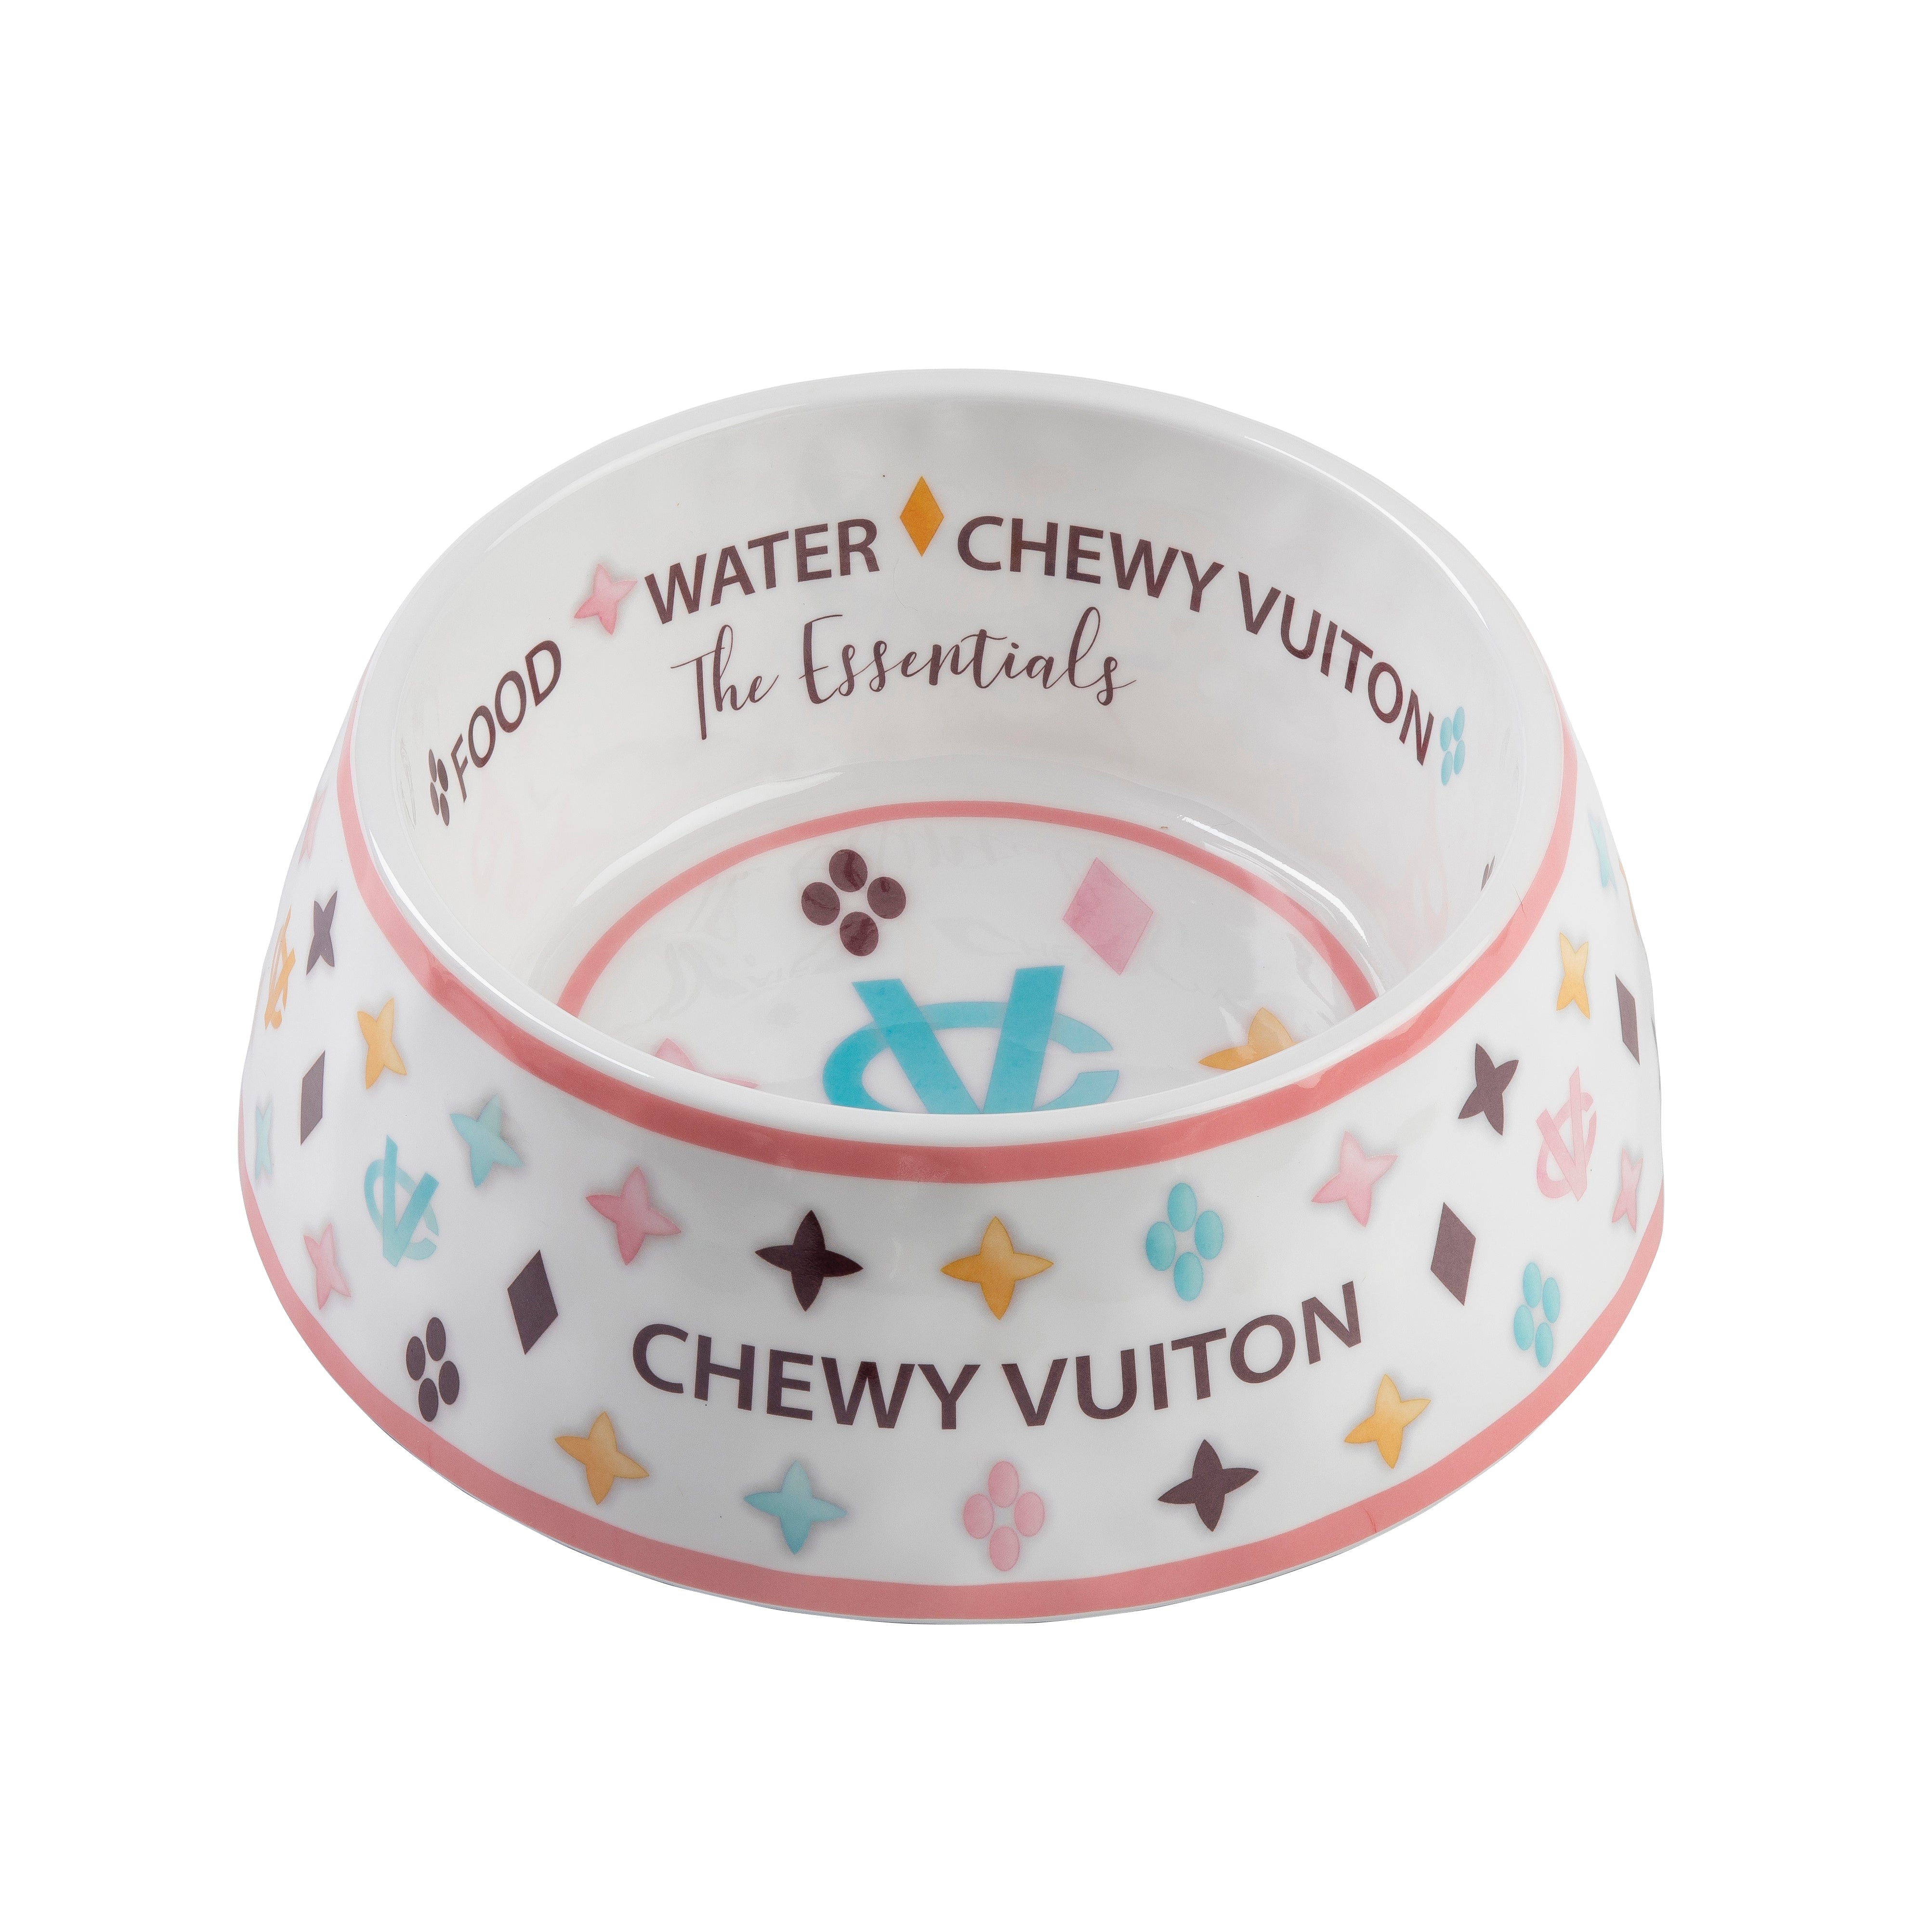 Chewy Vuiton classic bowl - Bowls - Seashore Fur Babies